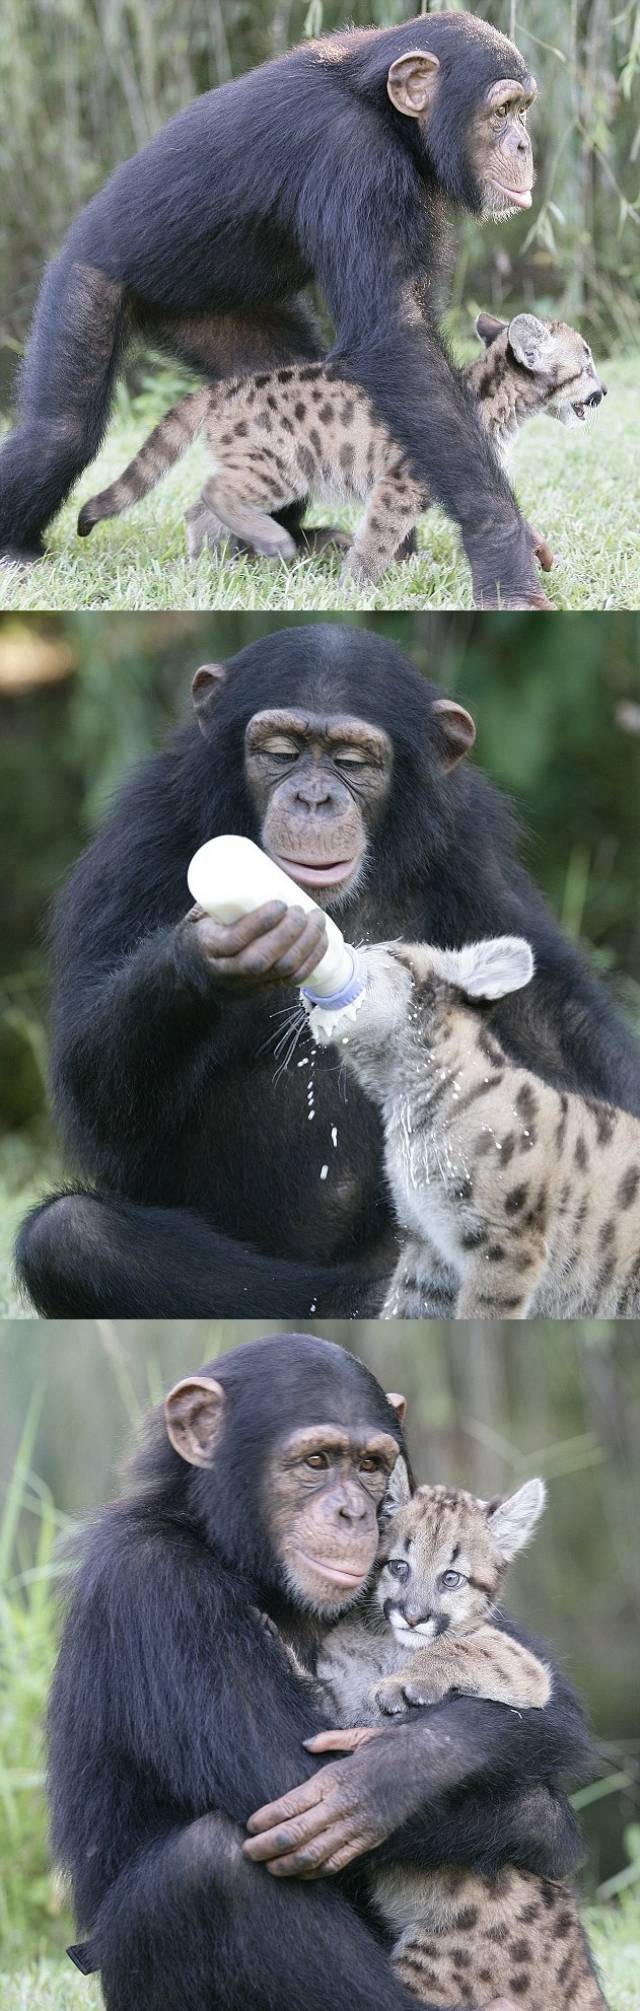 Un chimpanzé s'occupe d'un bébé puma